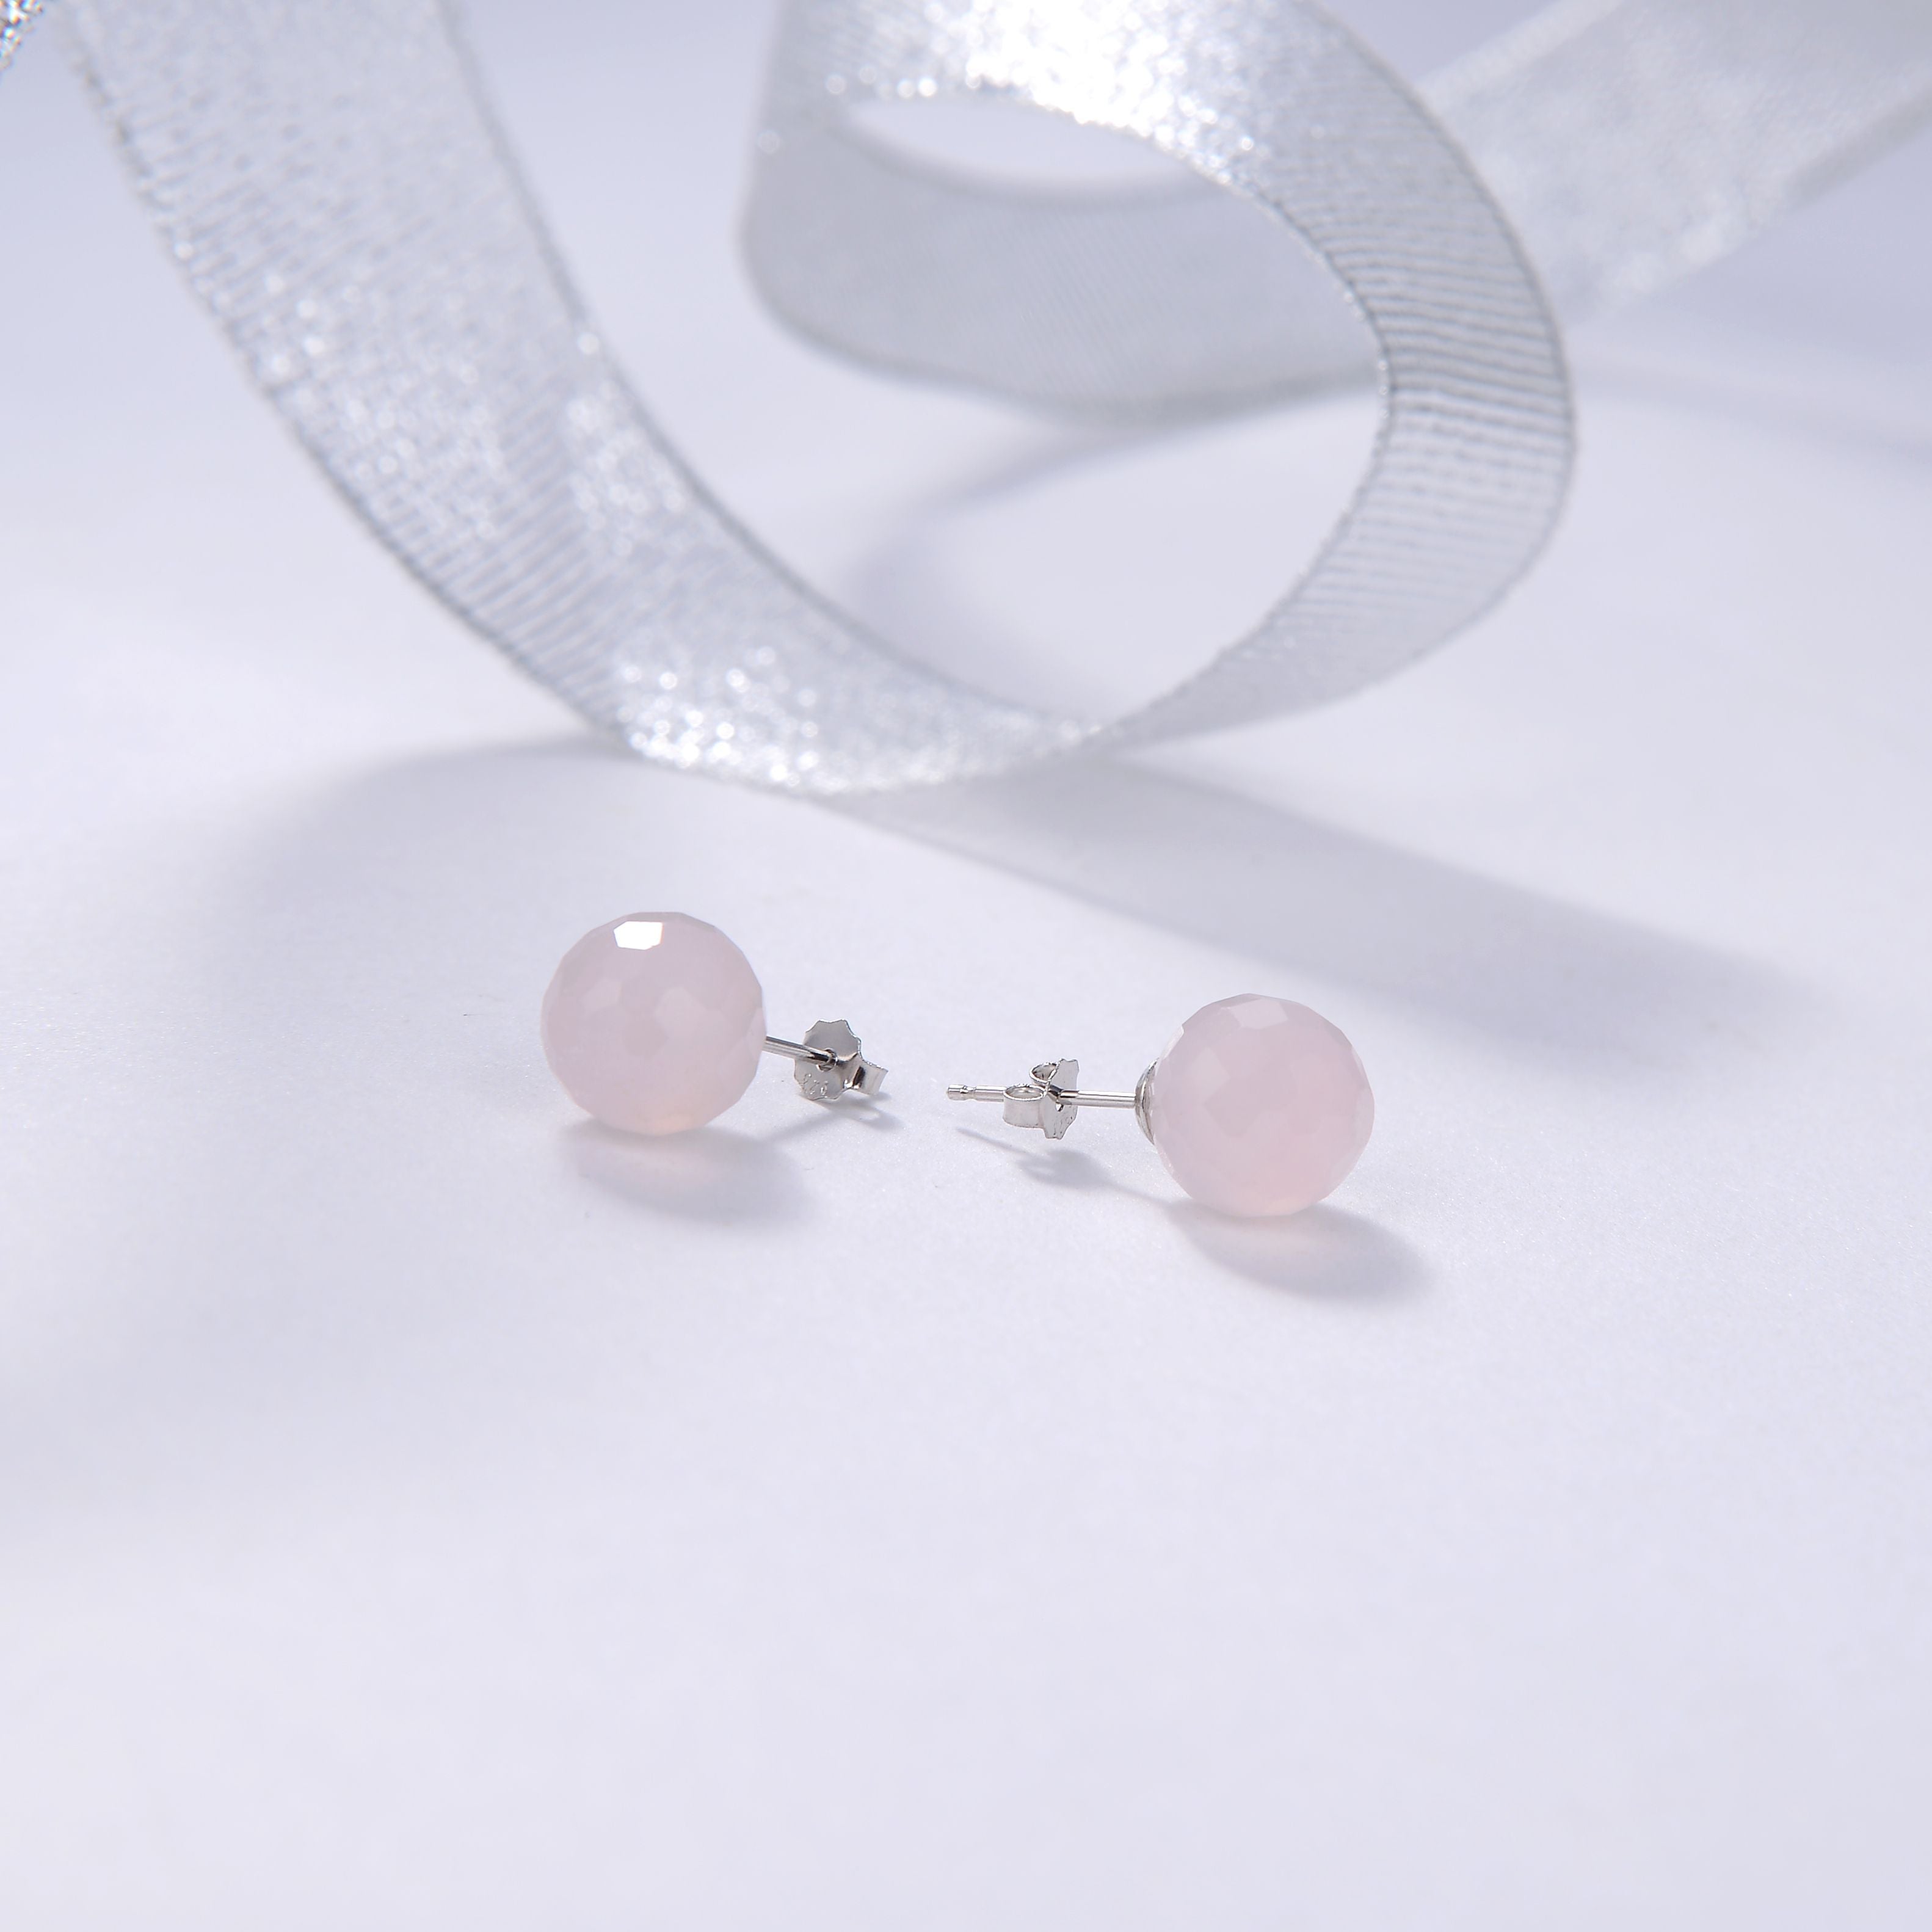 Beritafon 925 Sterling Silver Rose Quartz Gemstones Stud Earring for Women or Girls